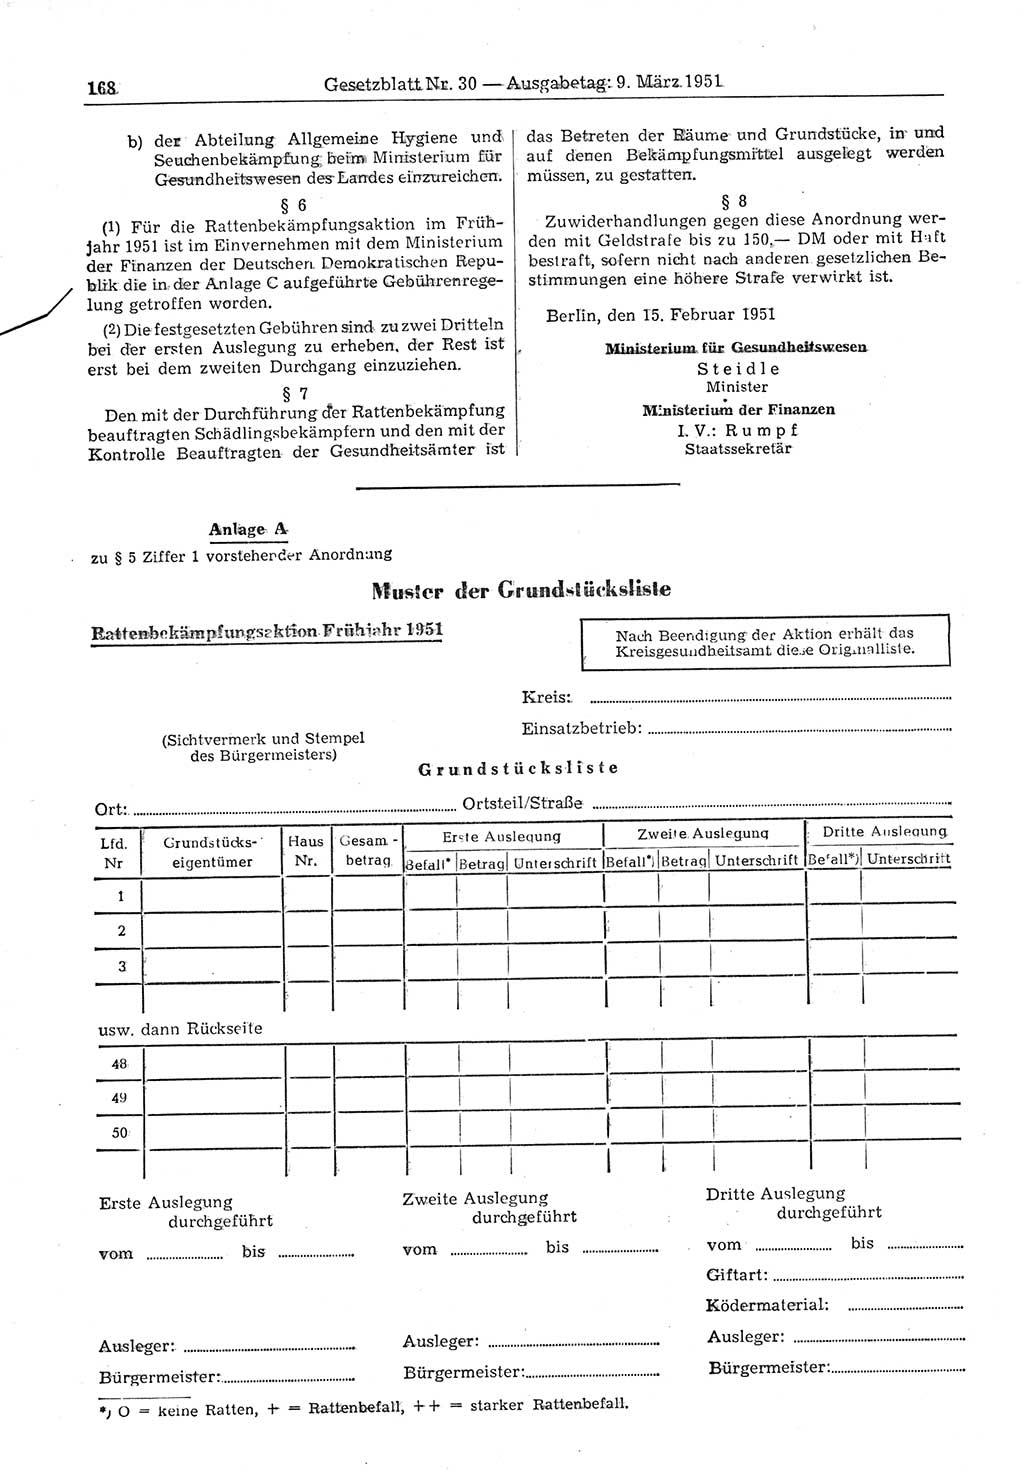 Gesetzblatt (GBl.) der Deutschen Demokratischen Republik (DDR) 1951, Seite 168 (GBl. DDR 1951, S. 168)